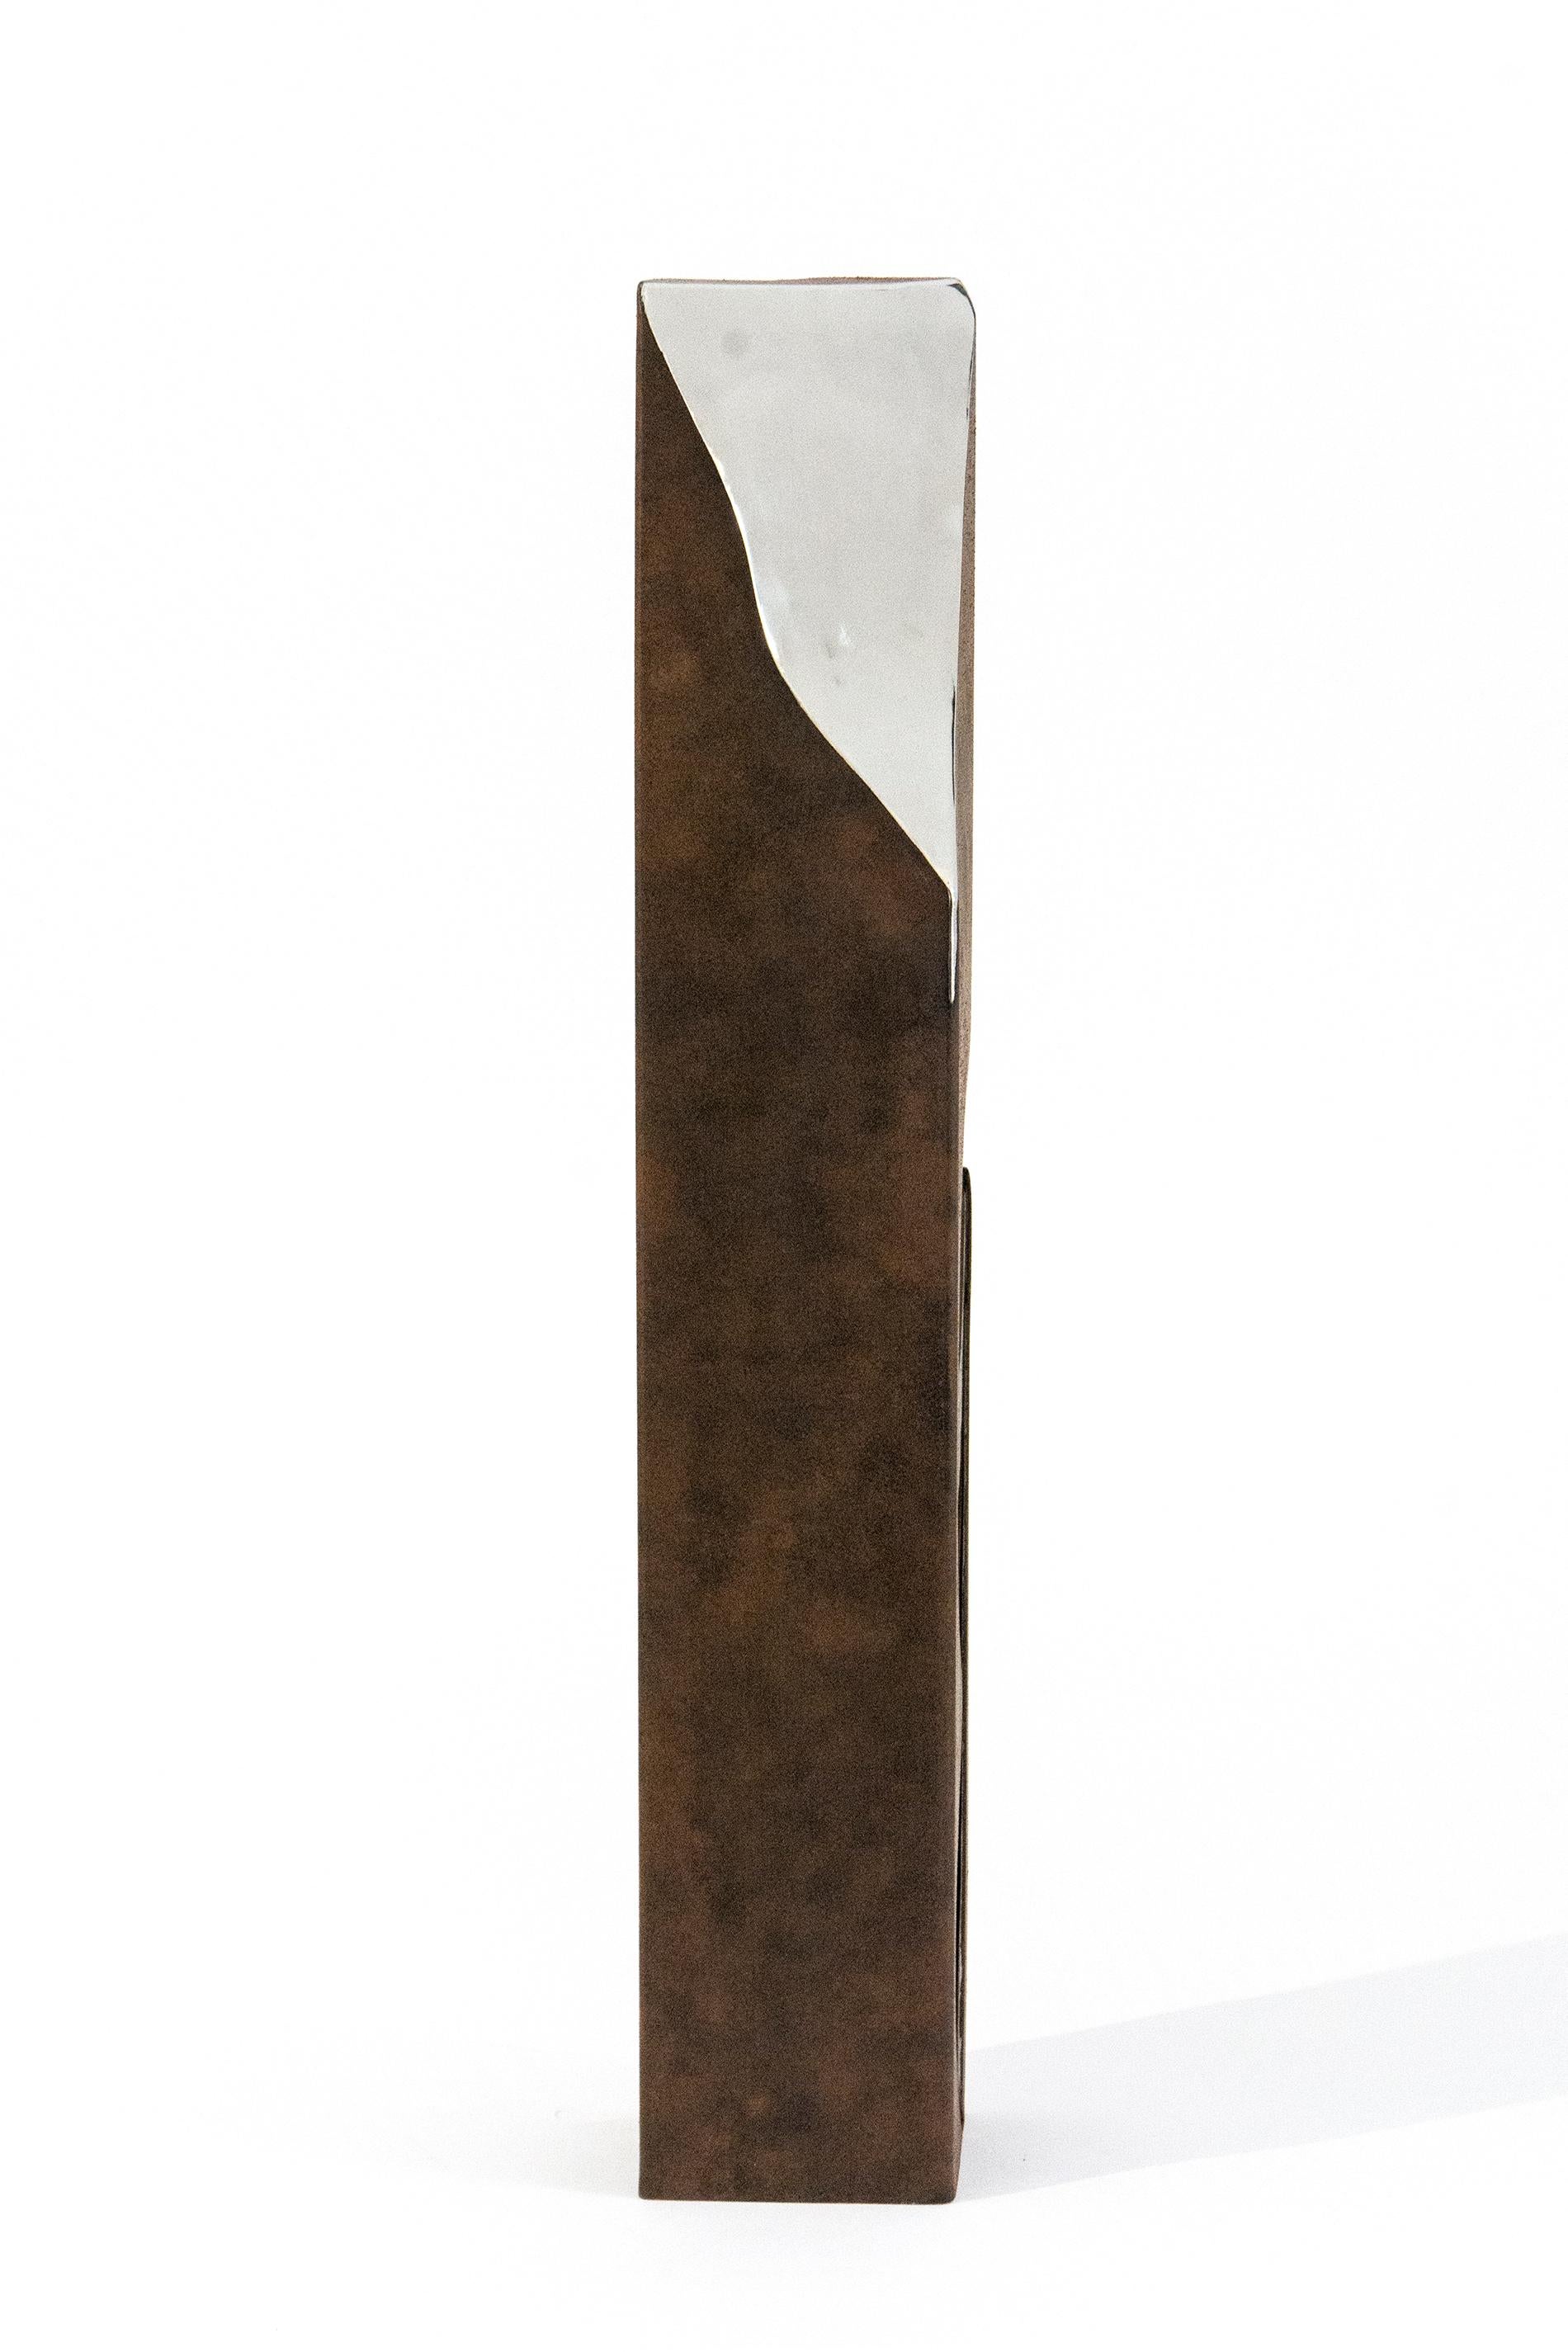 Abstract Sculpture Philippe Pallafray - Athabasca Rust 1/10 - haute, moderne, géométrique, contemporaine, sculpture en acier